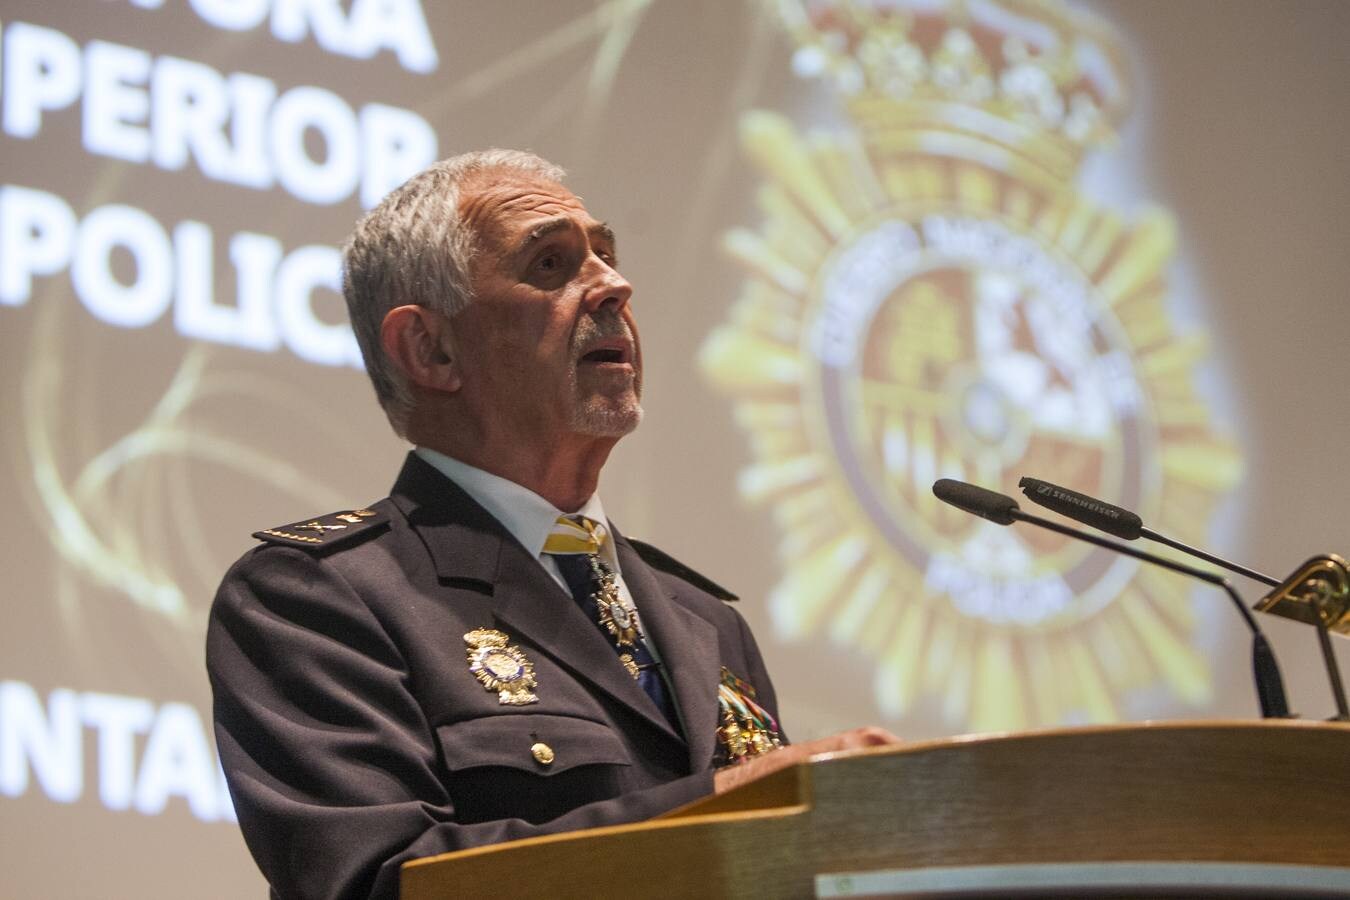 La Policía Nacional ha honrado a sus patrones, los 'Santos Ángeles Custodios